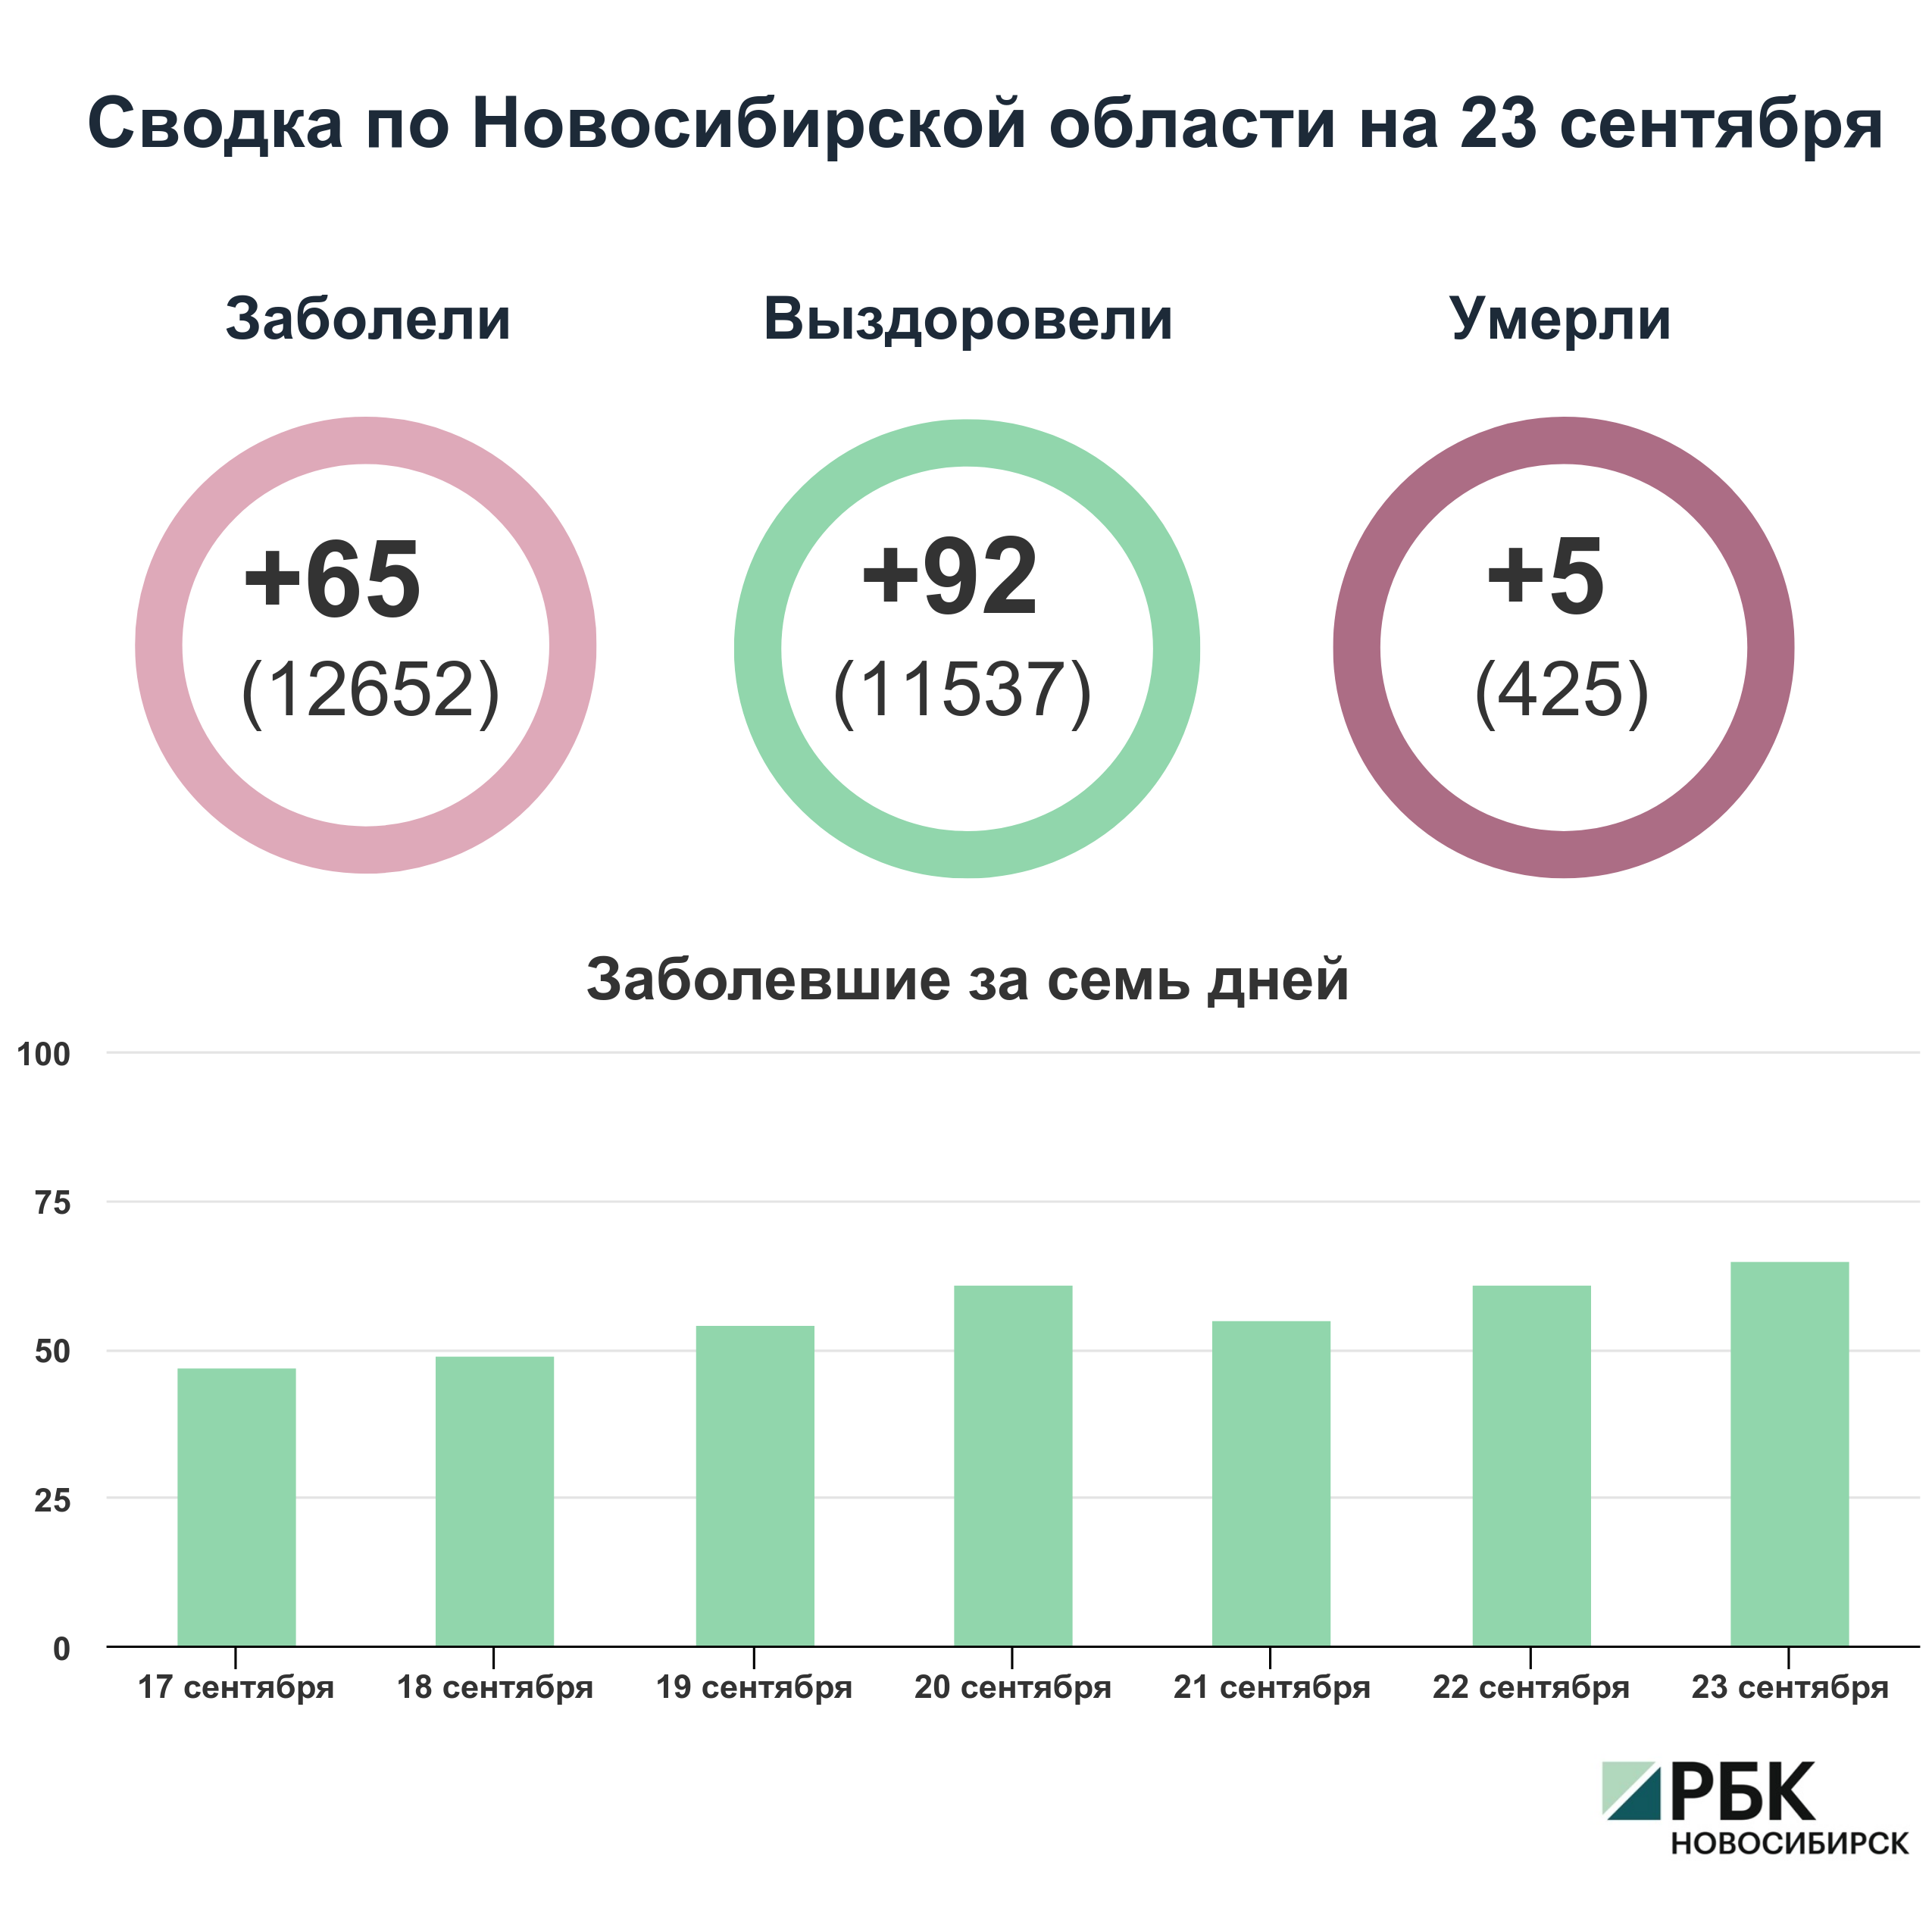 Коронавирус в Новосибирске: сводка на 23 сентября